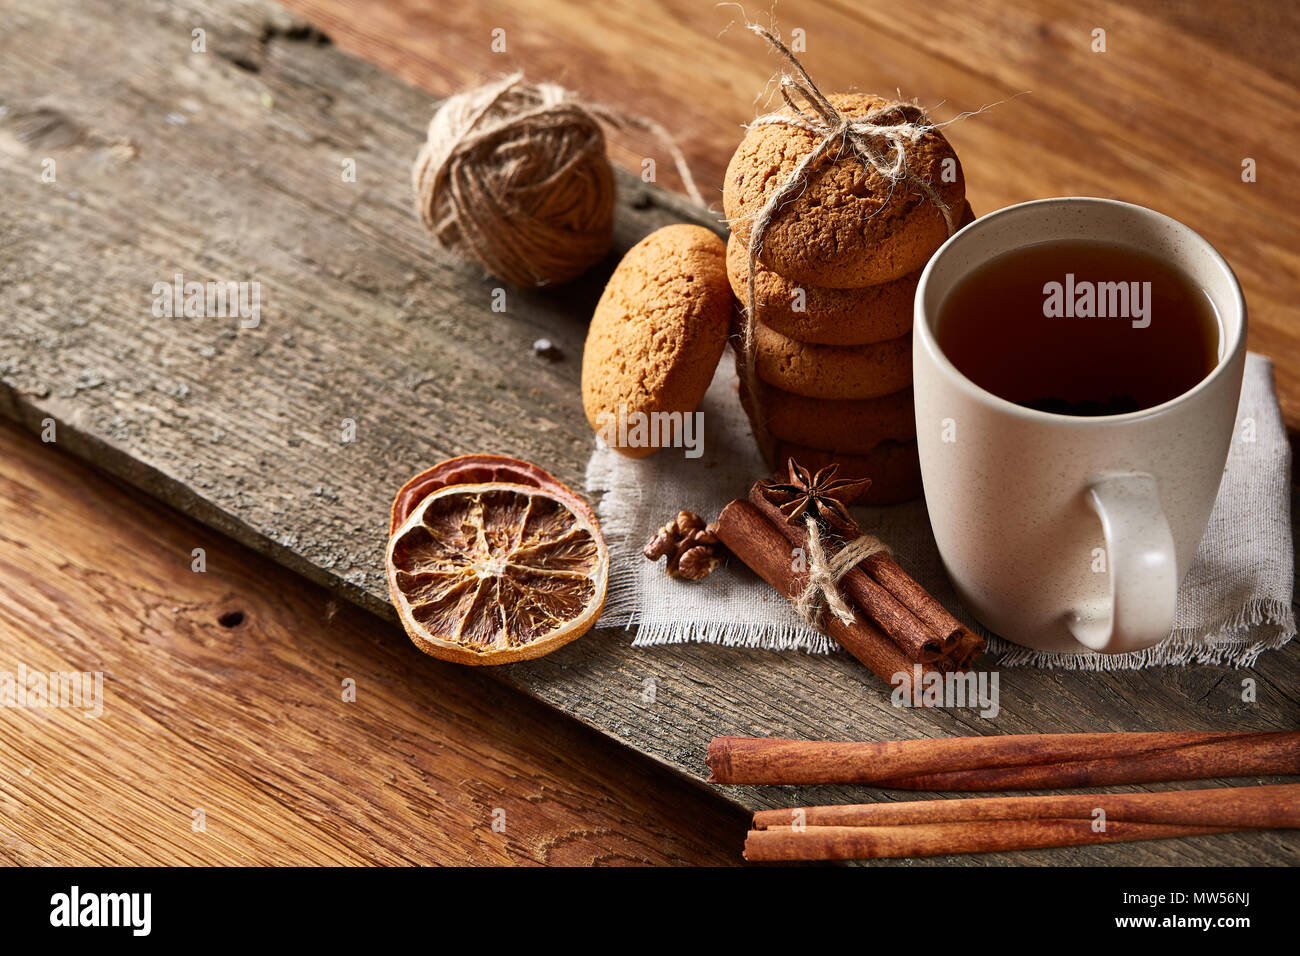 Natale tradizionale concetto di tè con una tazza di tè caldo, una grande serie di cookies su un tovagliolo homespun, bastoncini di cannella mazzetto, un paio di arance essiccate Foto Stock